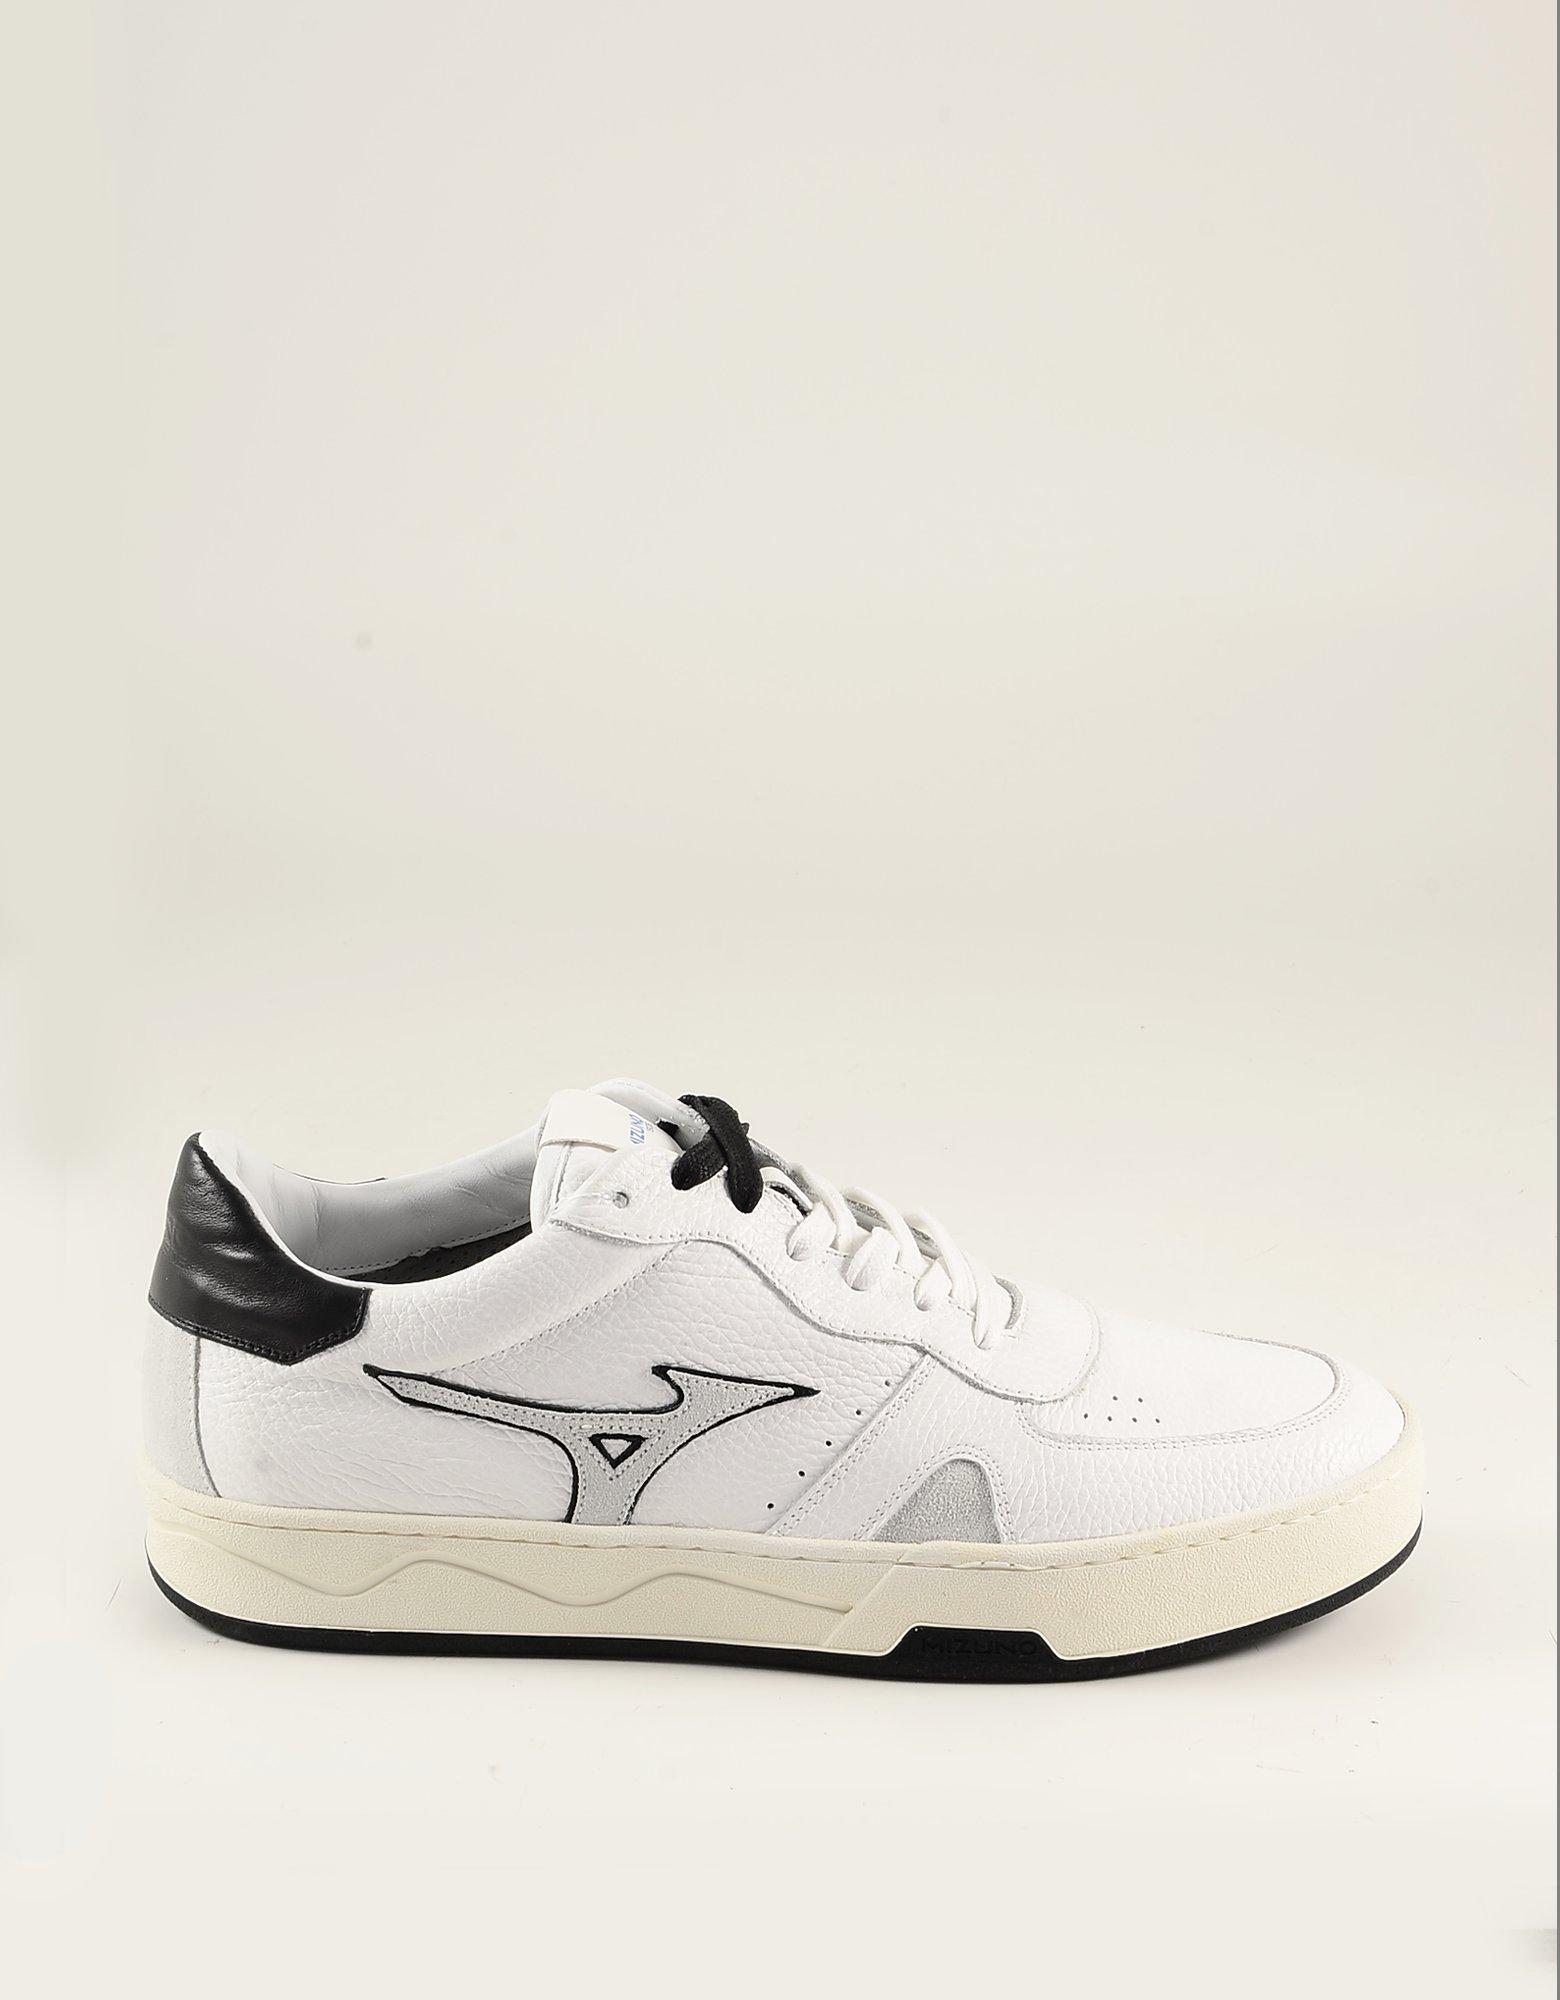 ontrouw Verandering Adelaide Diadora White Leather Men's Sneaker 43 at FORZIERI